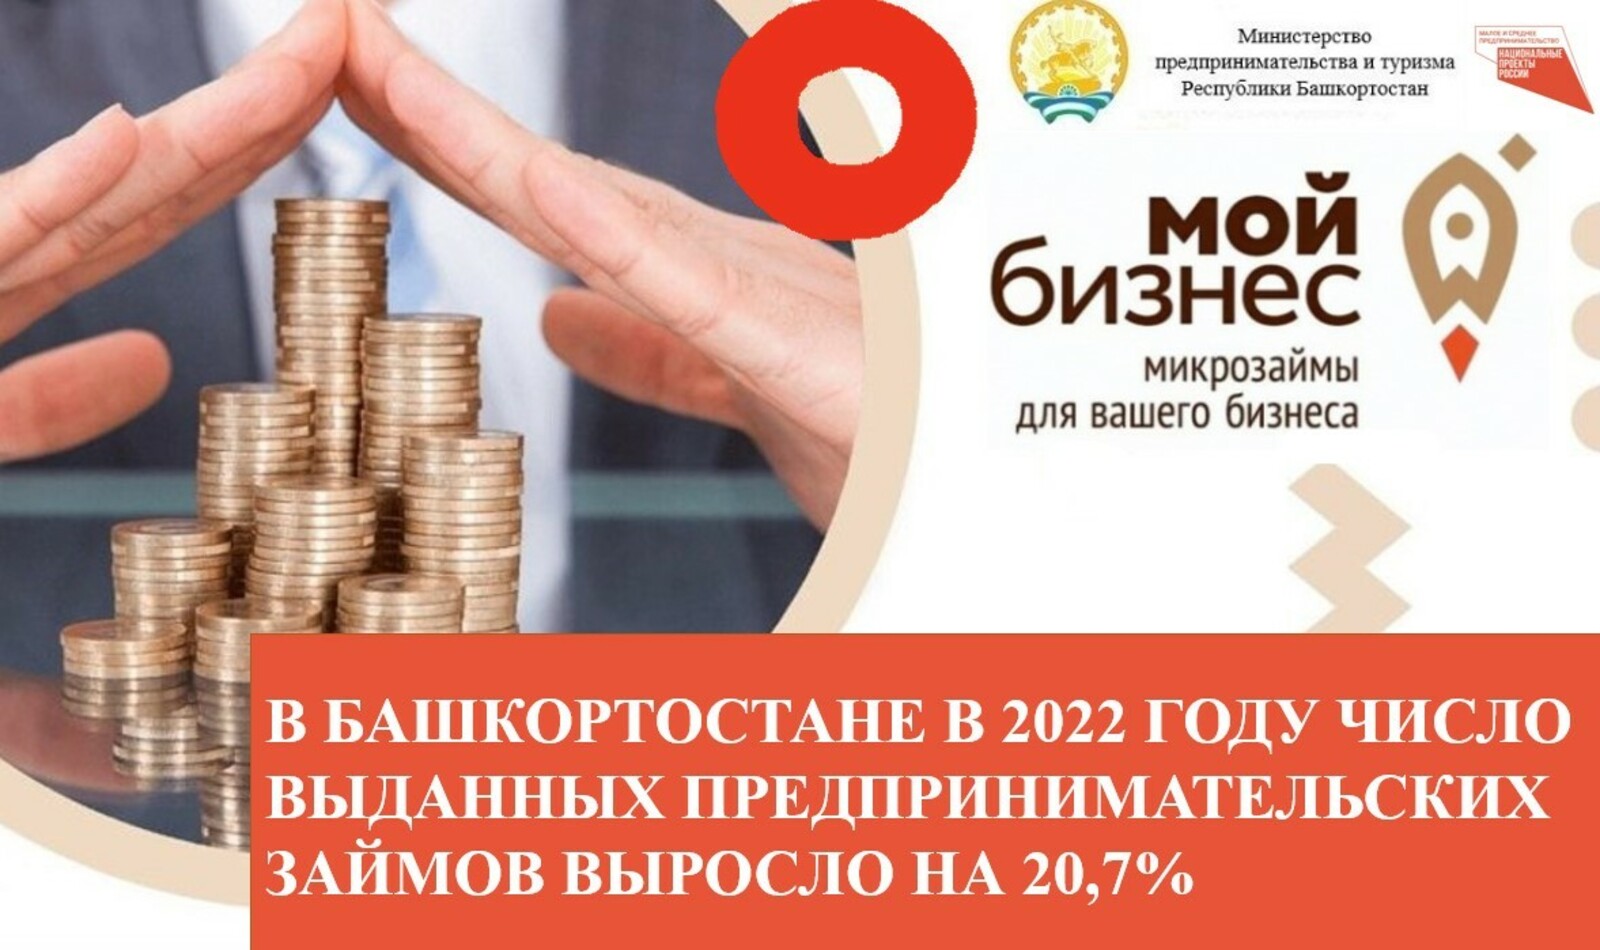 В Башкортостане в 2022 году число выданных предпринимательских займов выросло на 20,7%